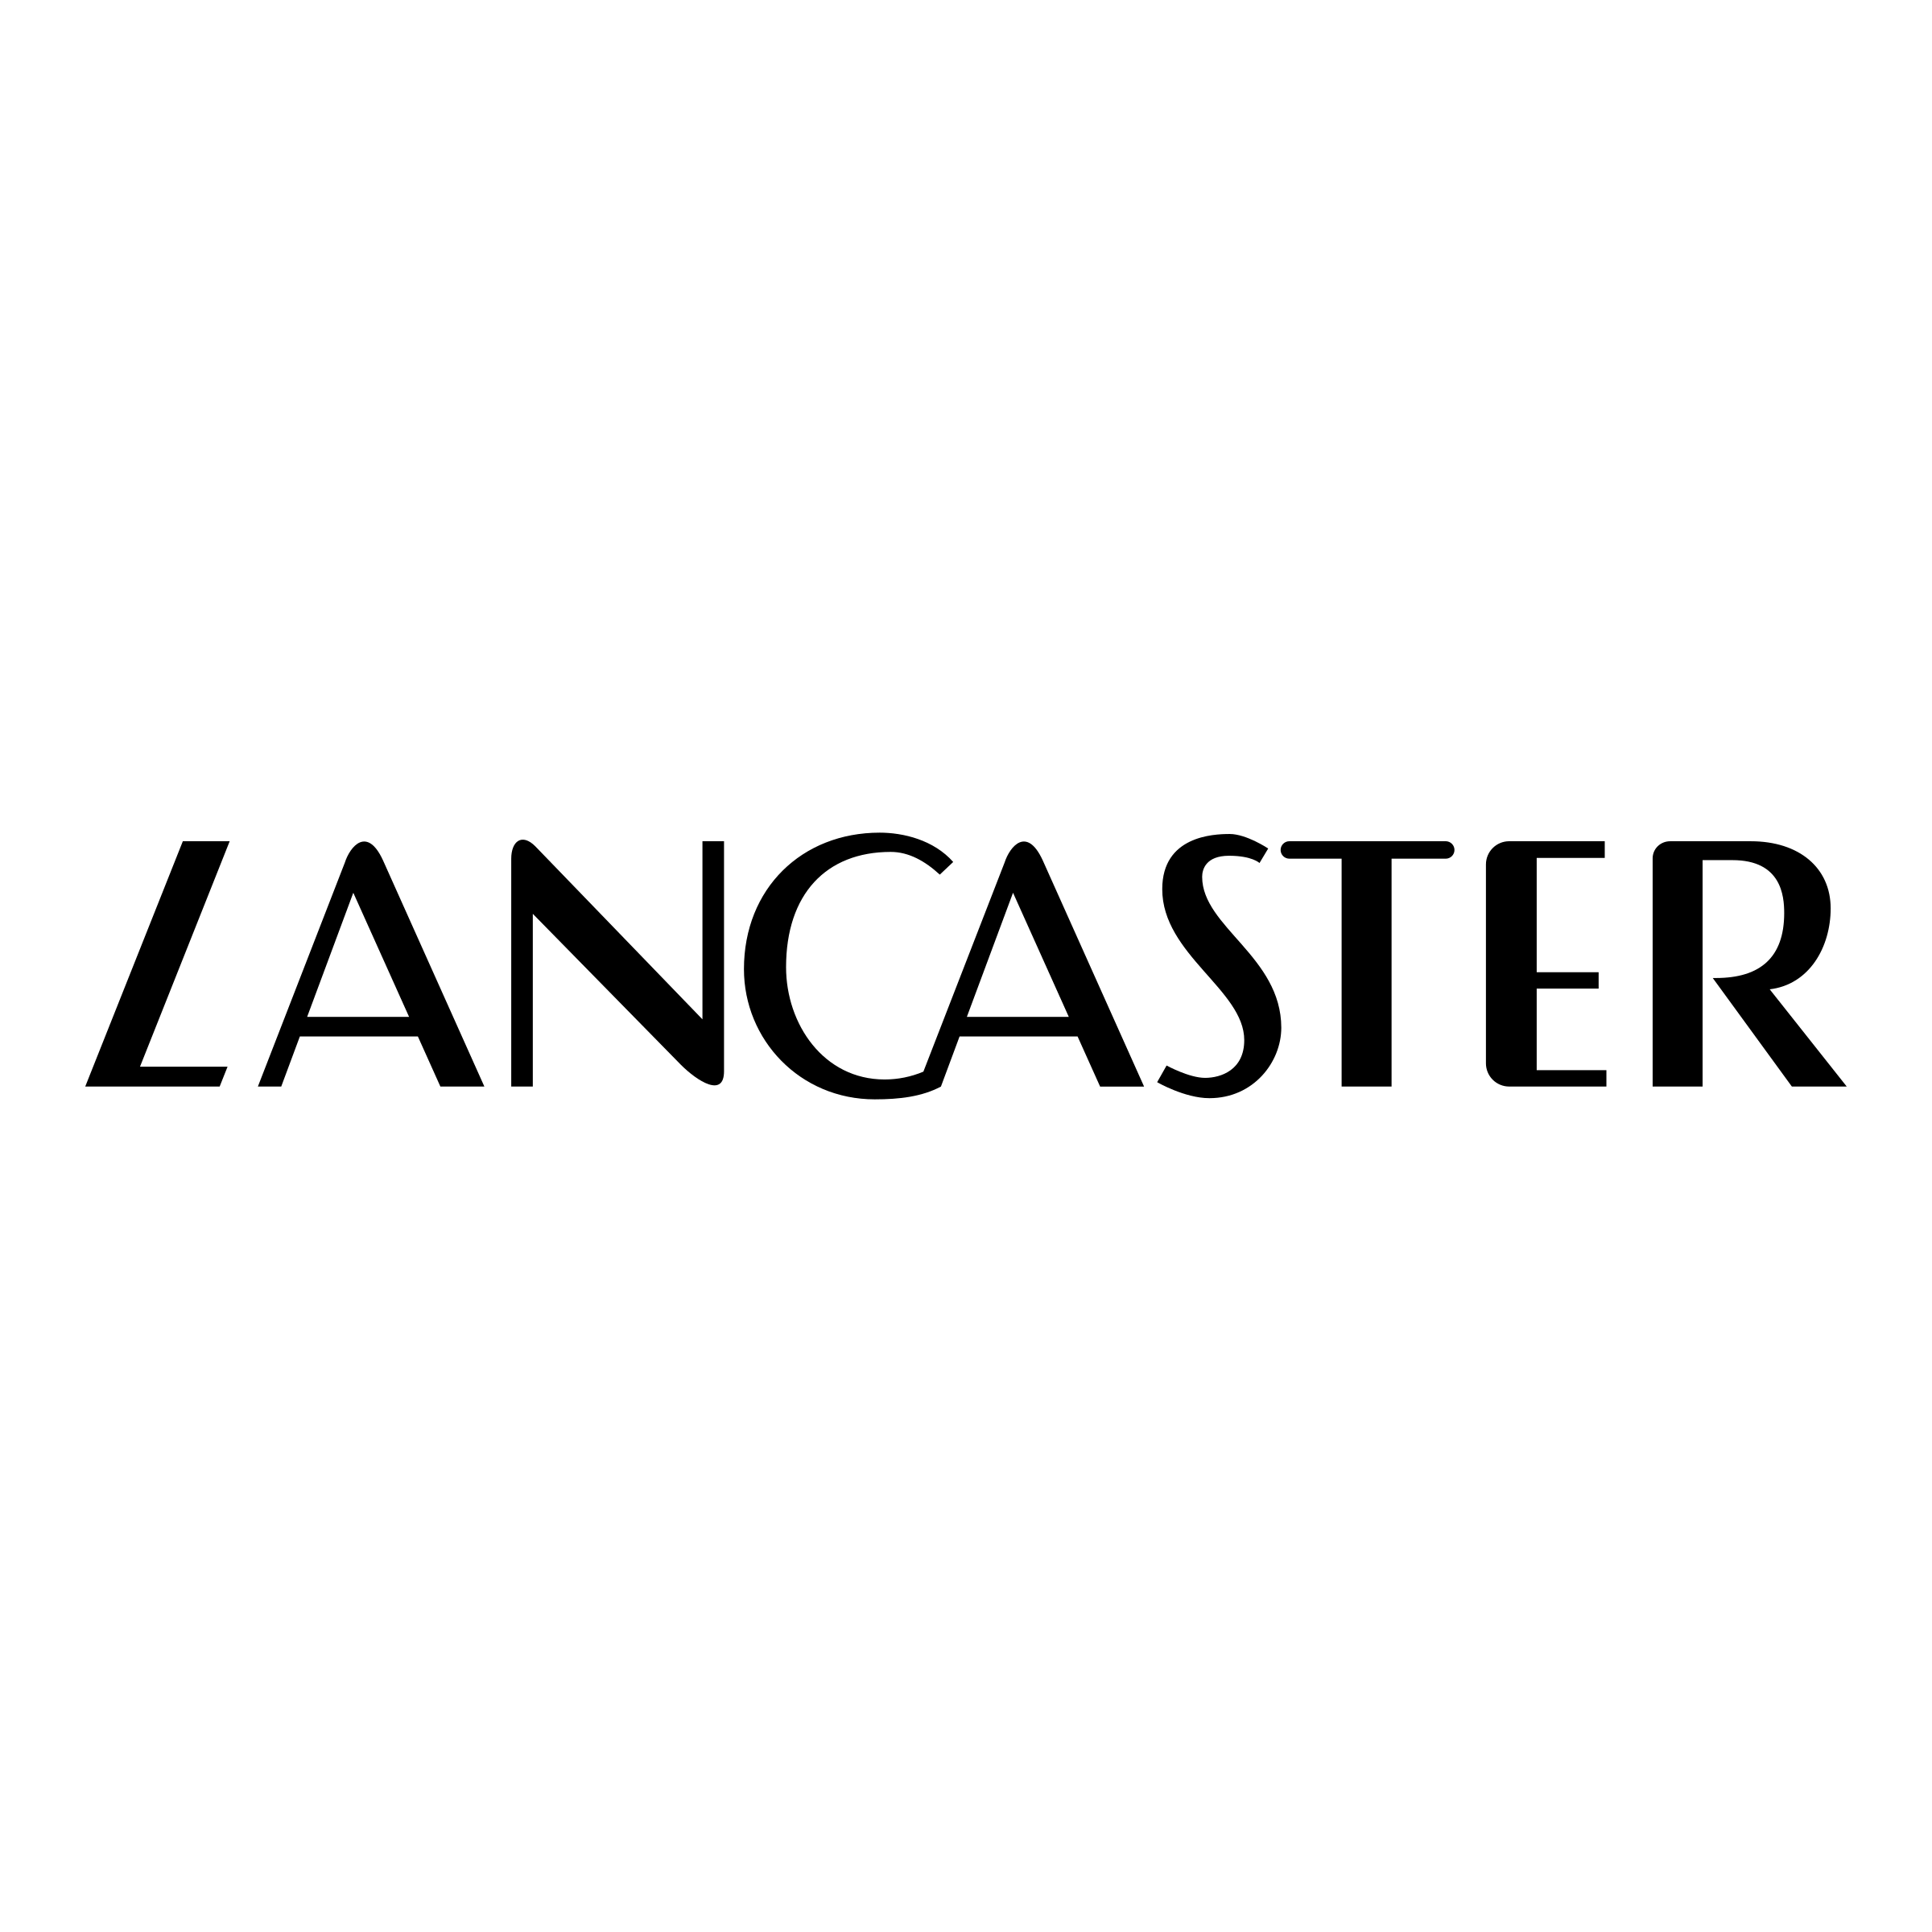 Lancaster Logo - Lancaster Logo PNG Transparent & SVG Vector